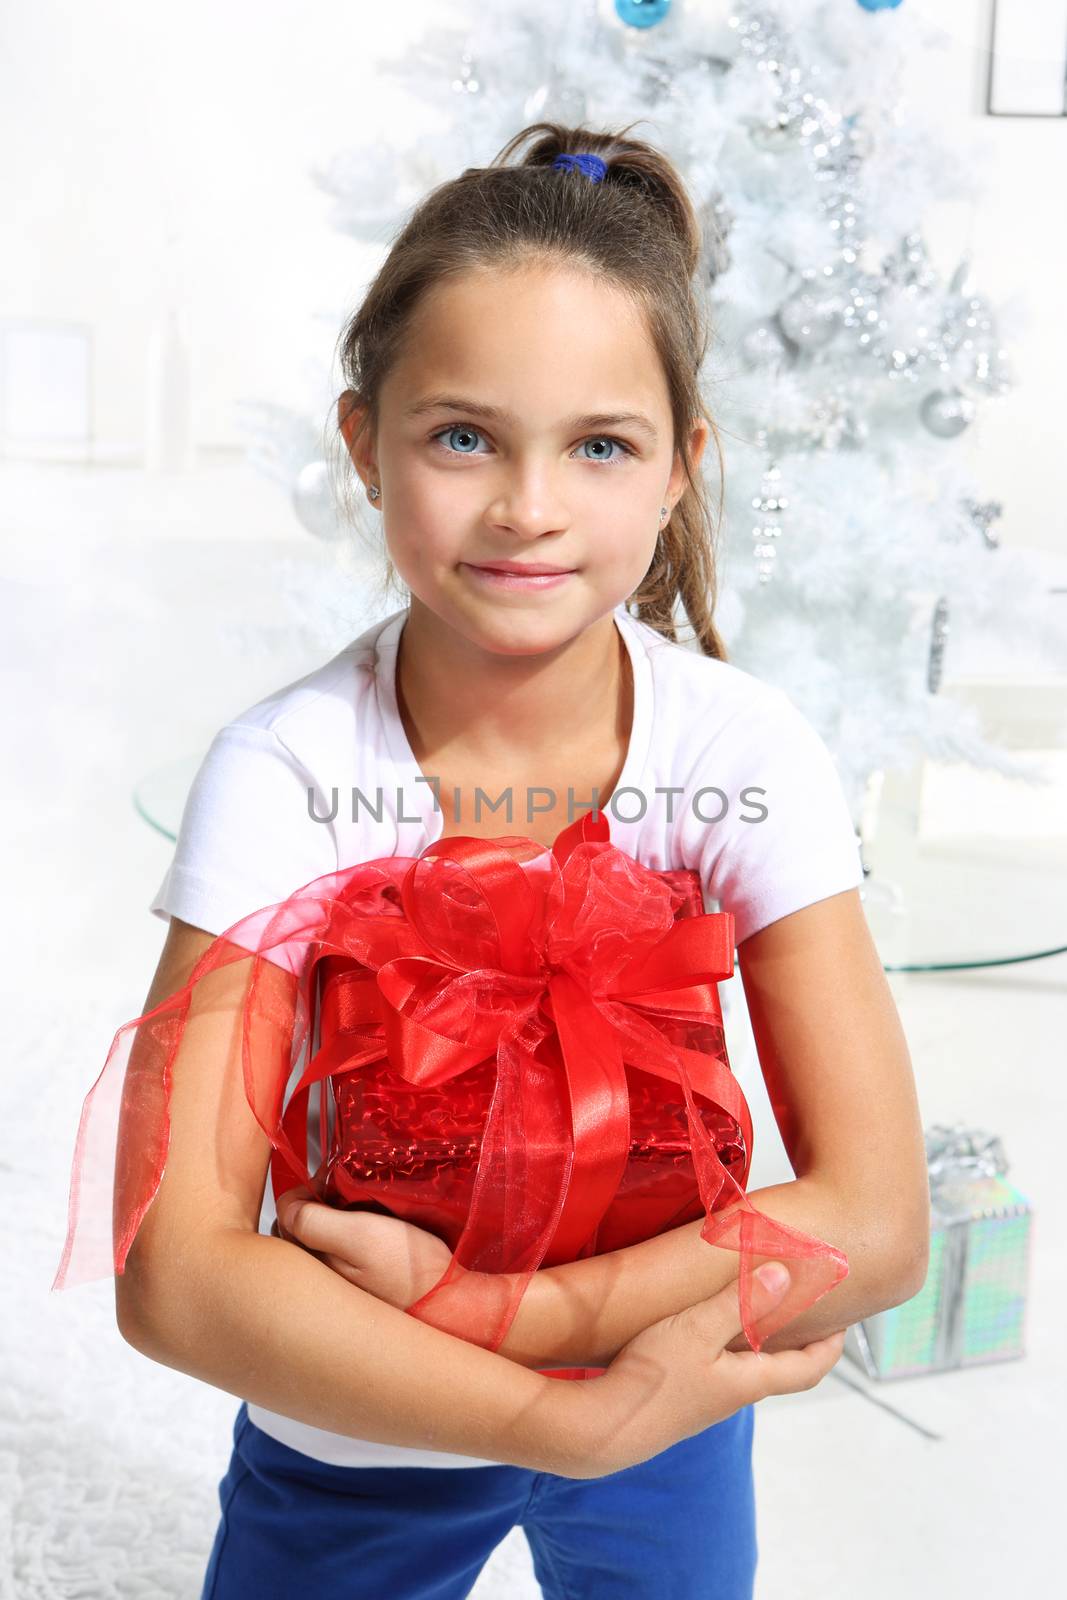 Girl with Christmas present